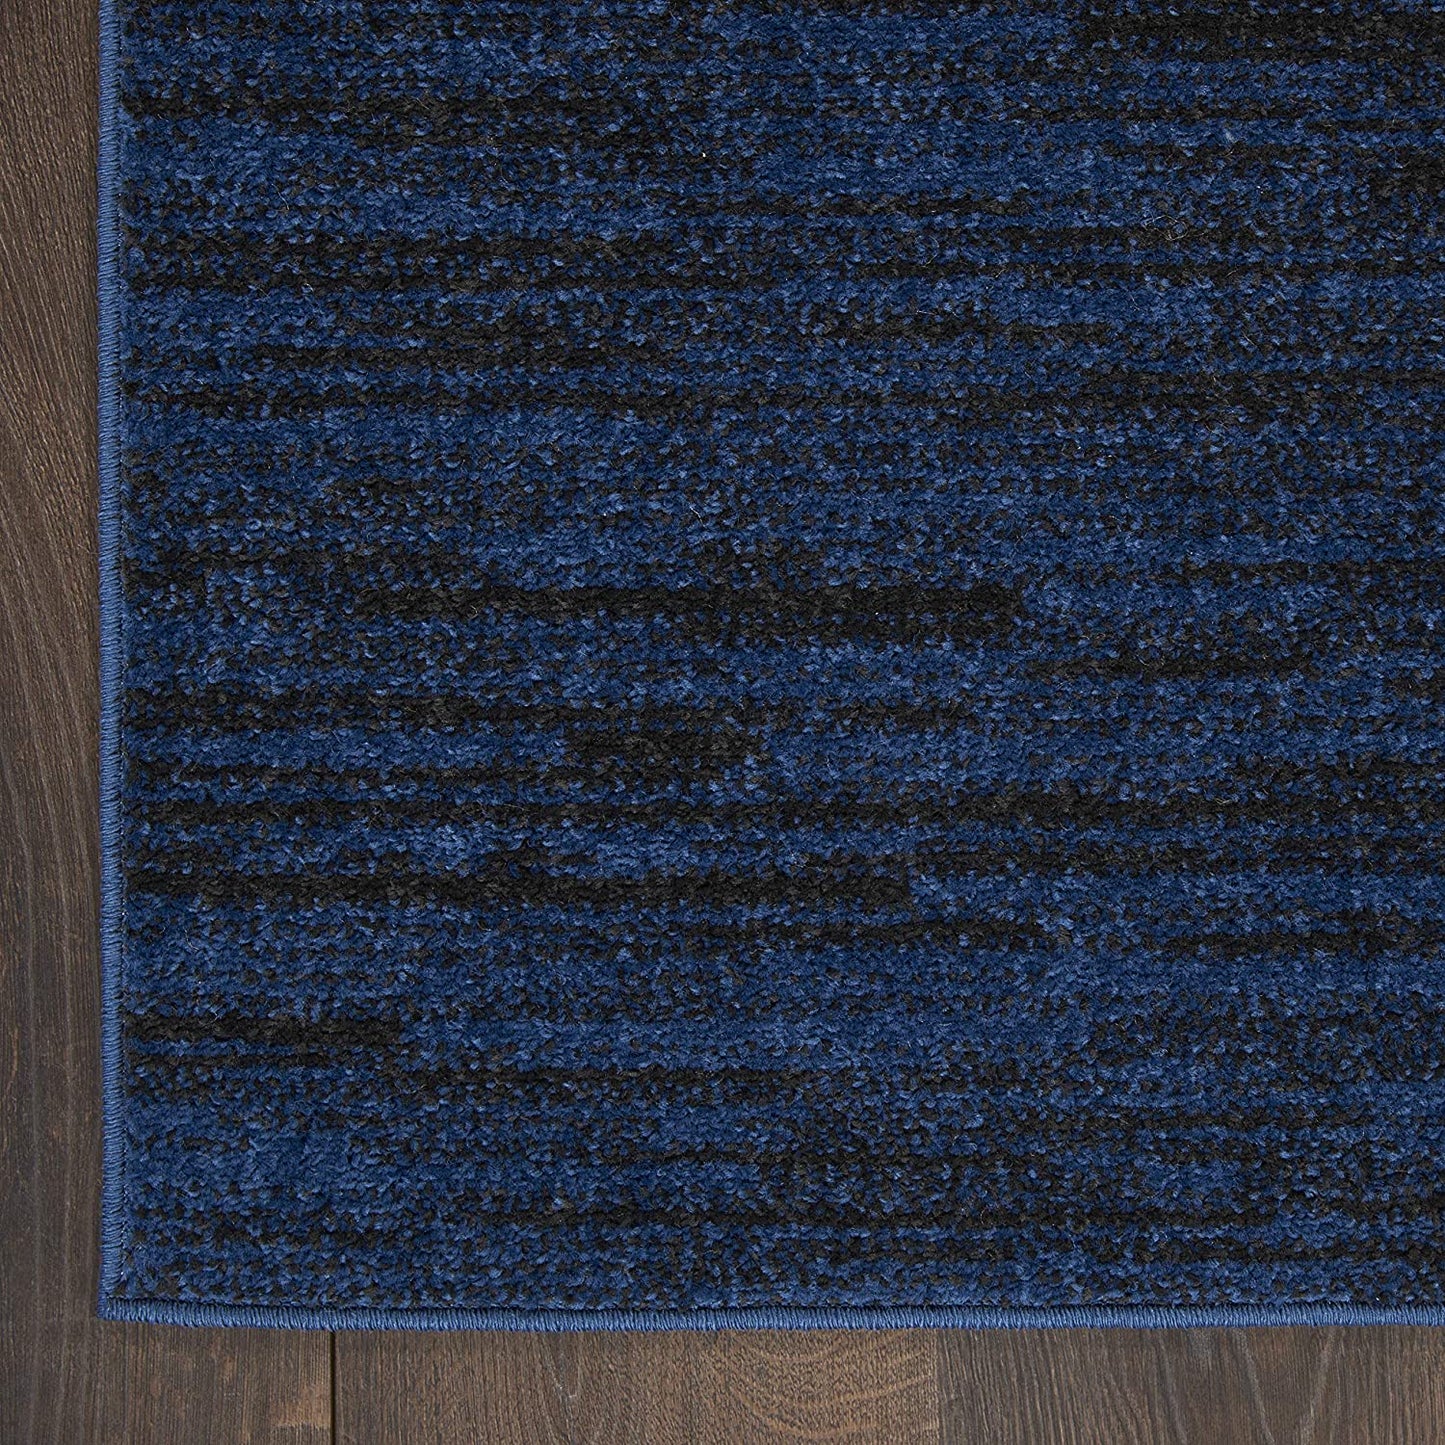 Solid Contemporary Midnight Blue Indoor/Outdoor Area Rug